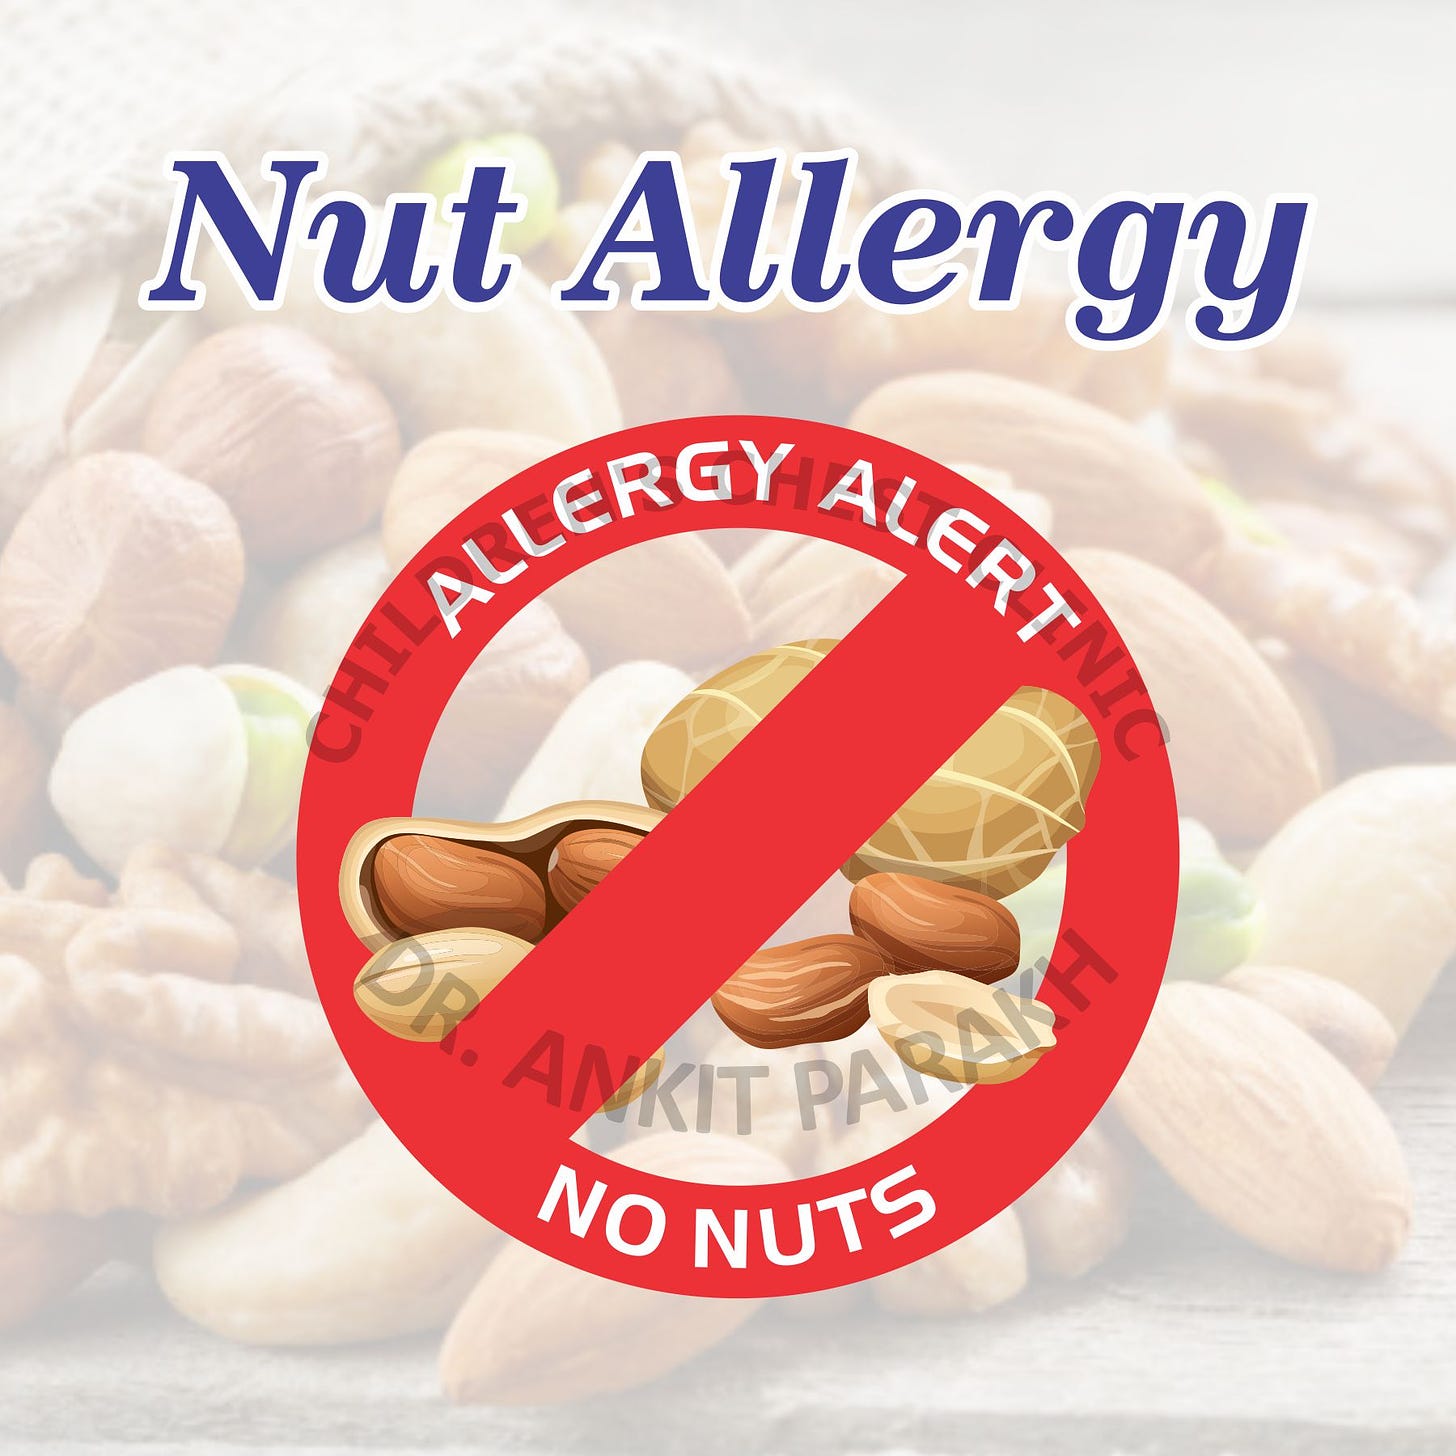 Nut Allergy | Causes, Symptoms & Treatment - Dr. Ankit Parakh